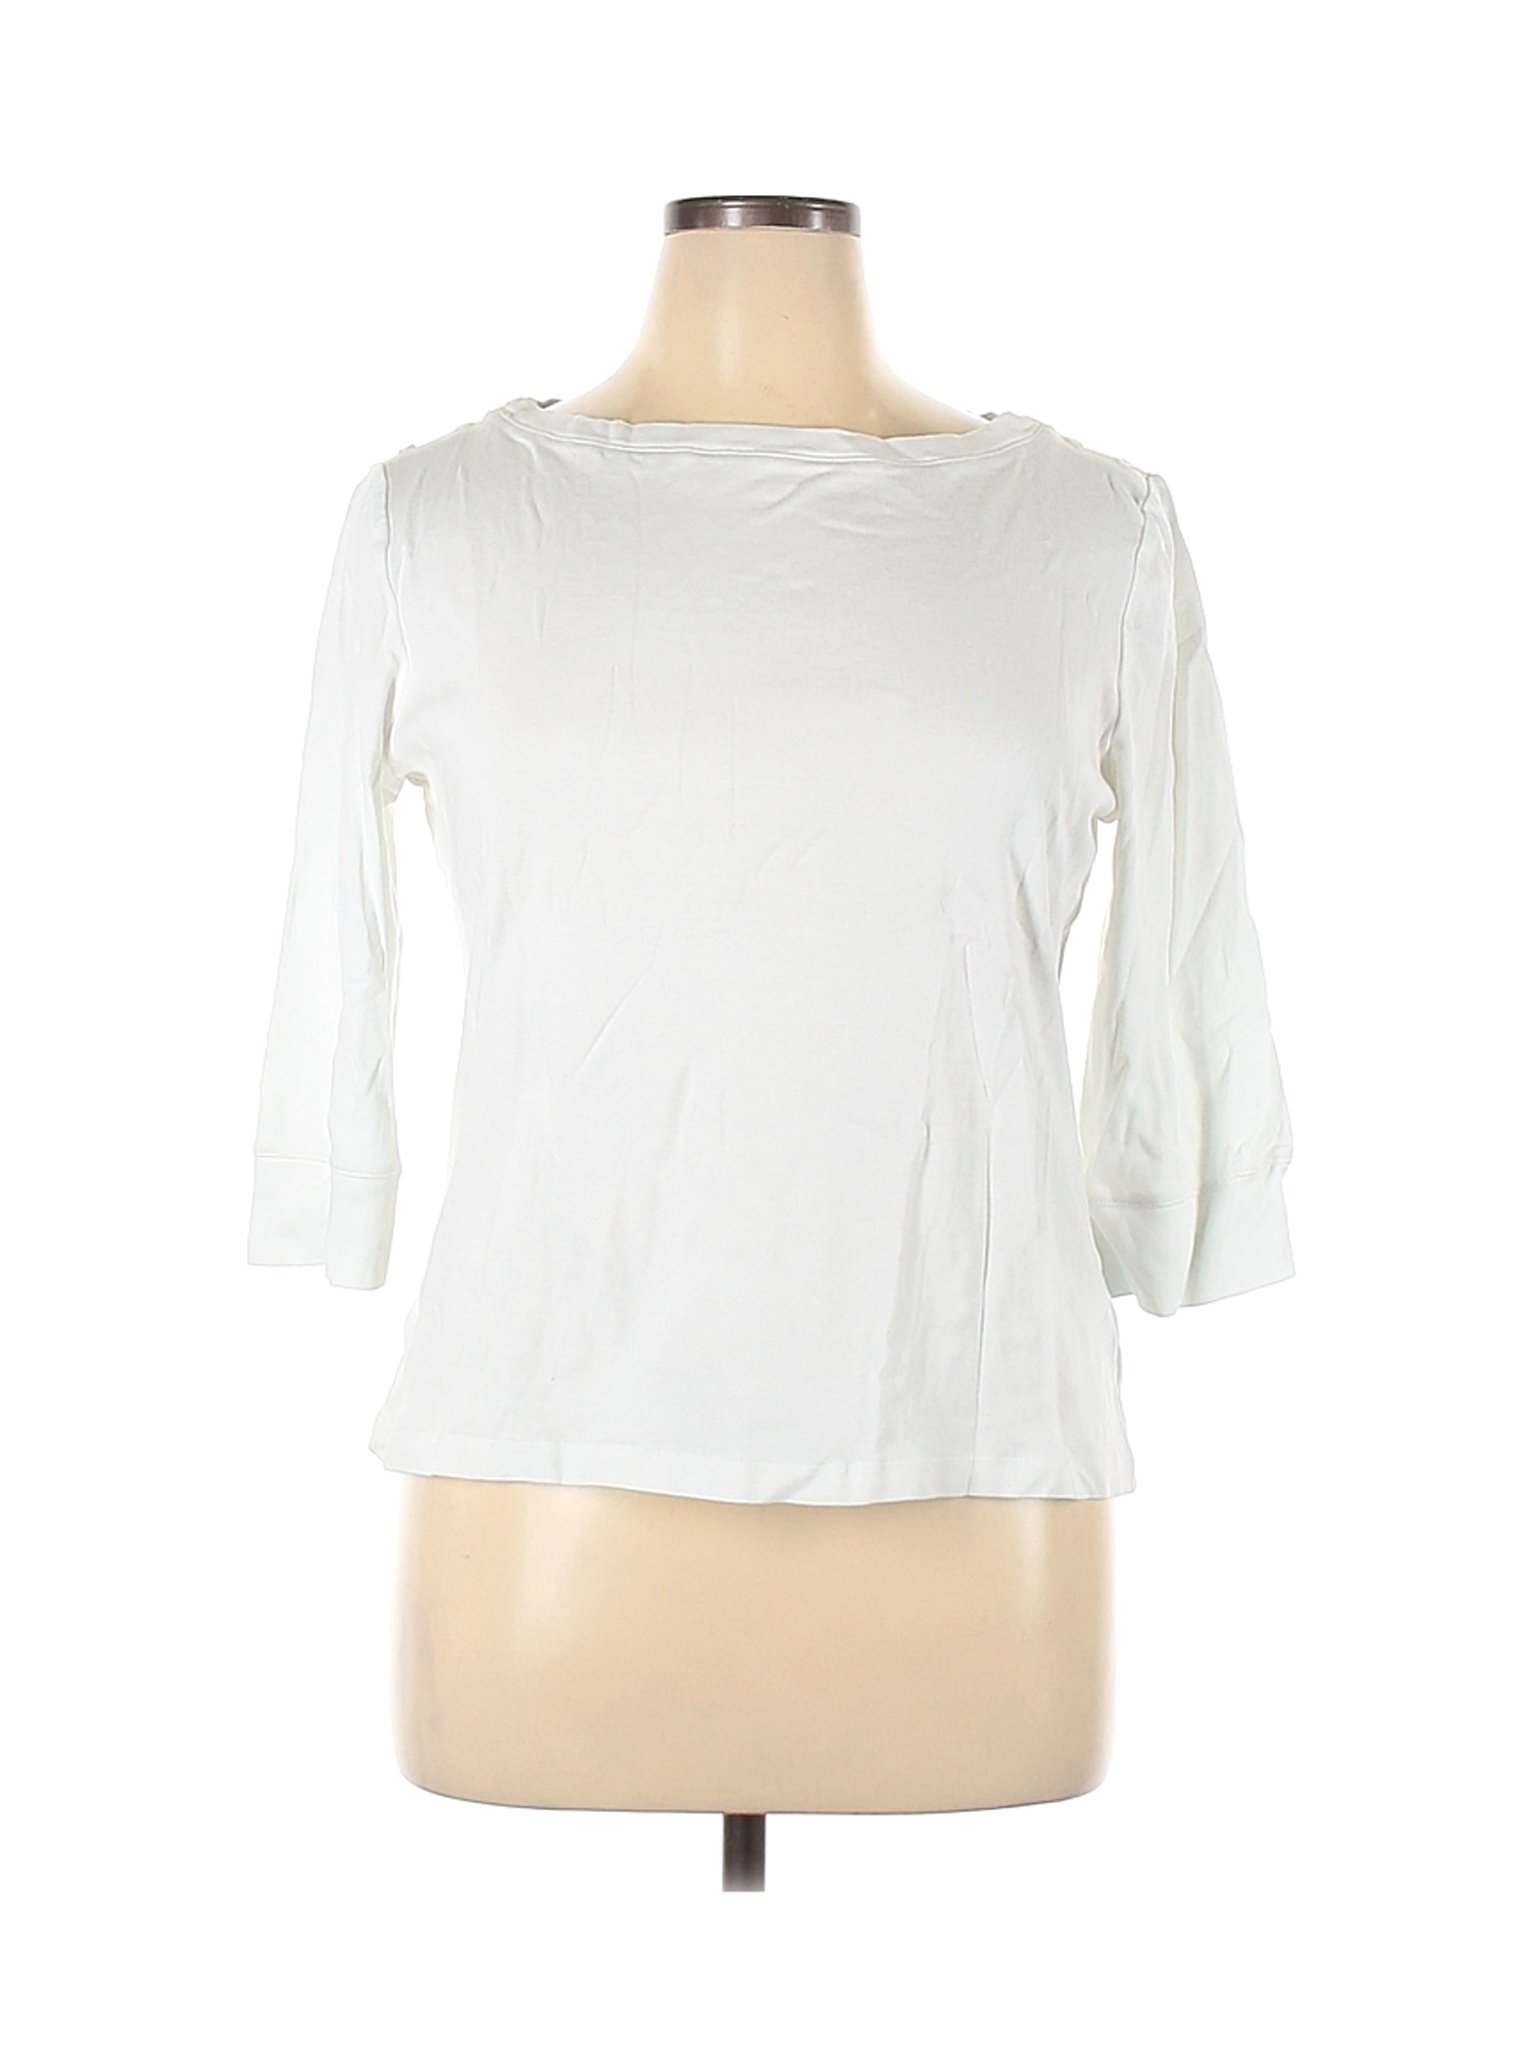 Jones New York Signature Women White 3/4 Sleeve T-Shirt XL | eBay